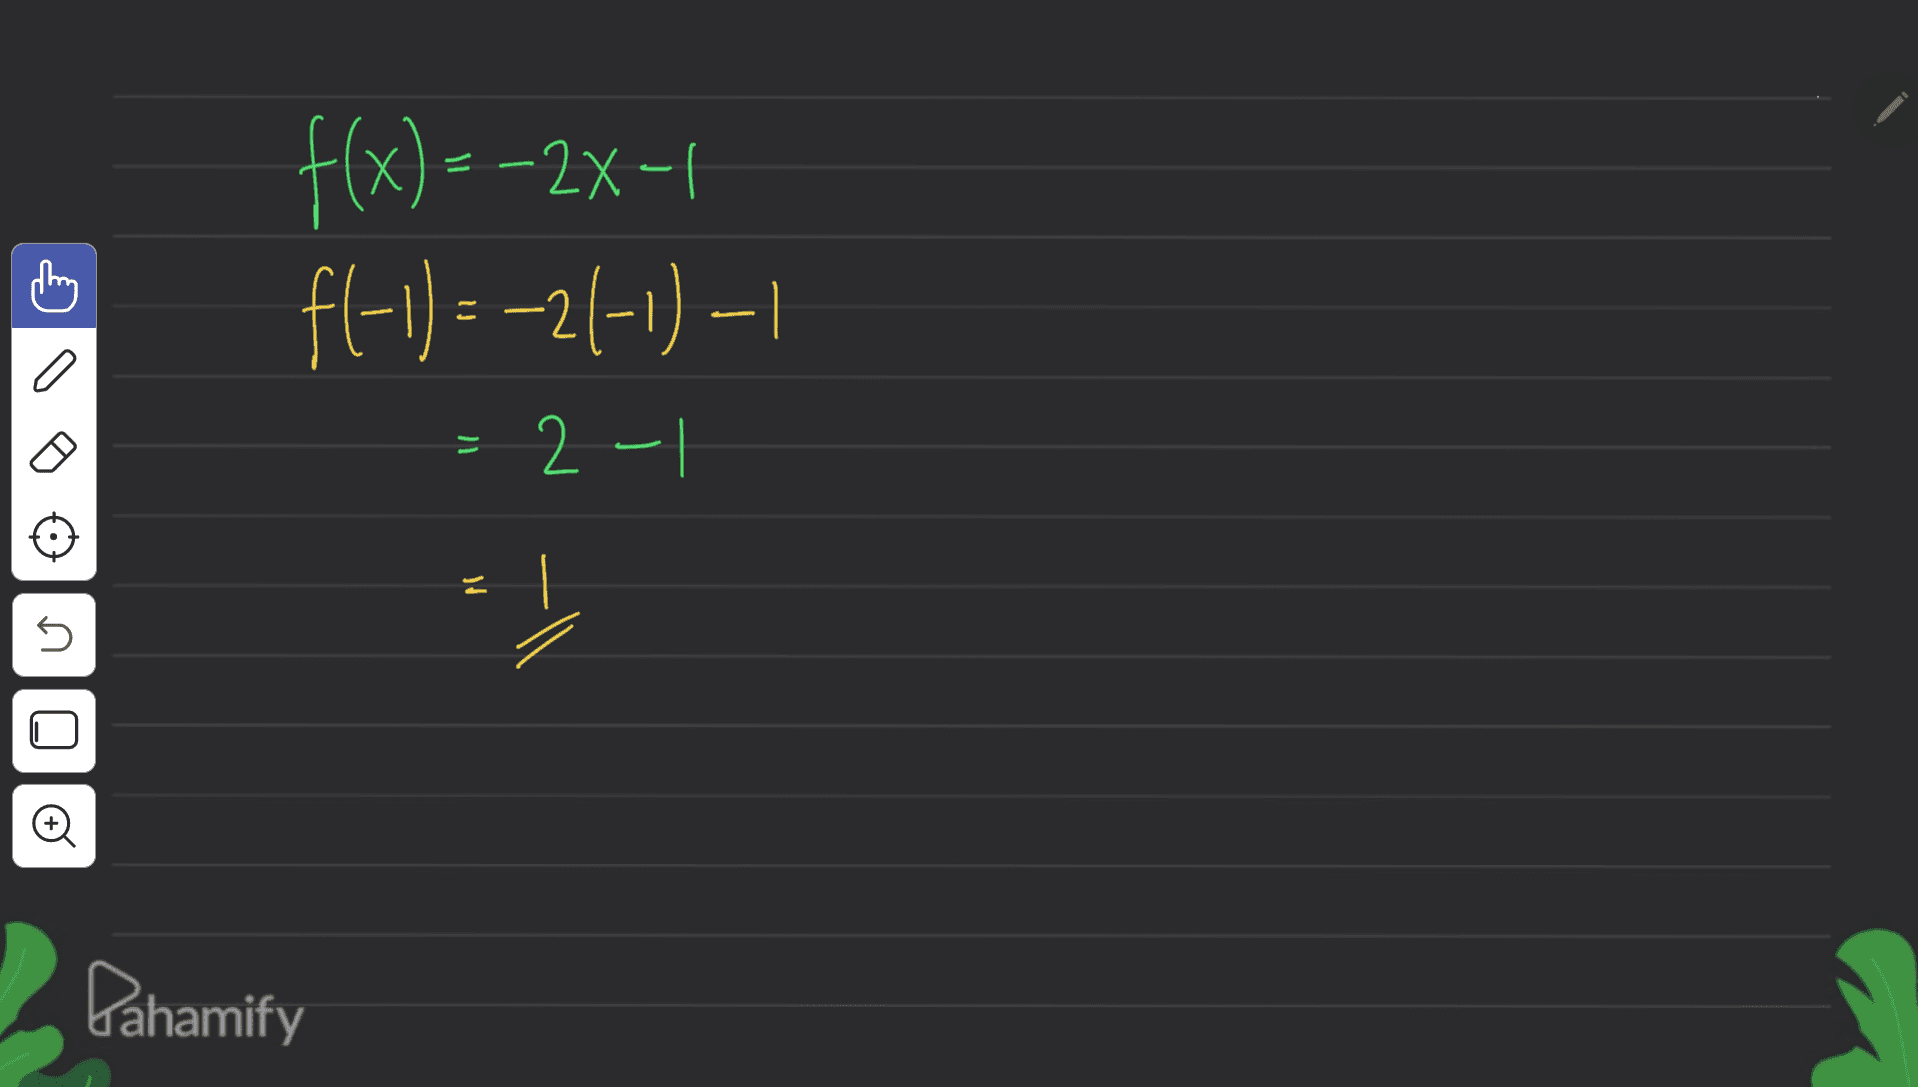 f(x)=-2x-1 fl-1) = -21-1) - 1 = 2-1 5 LI 0 0 Pahamify 